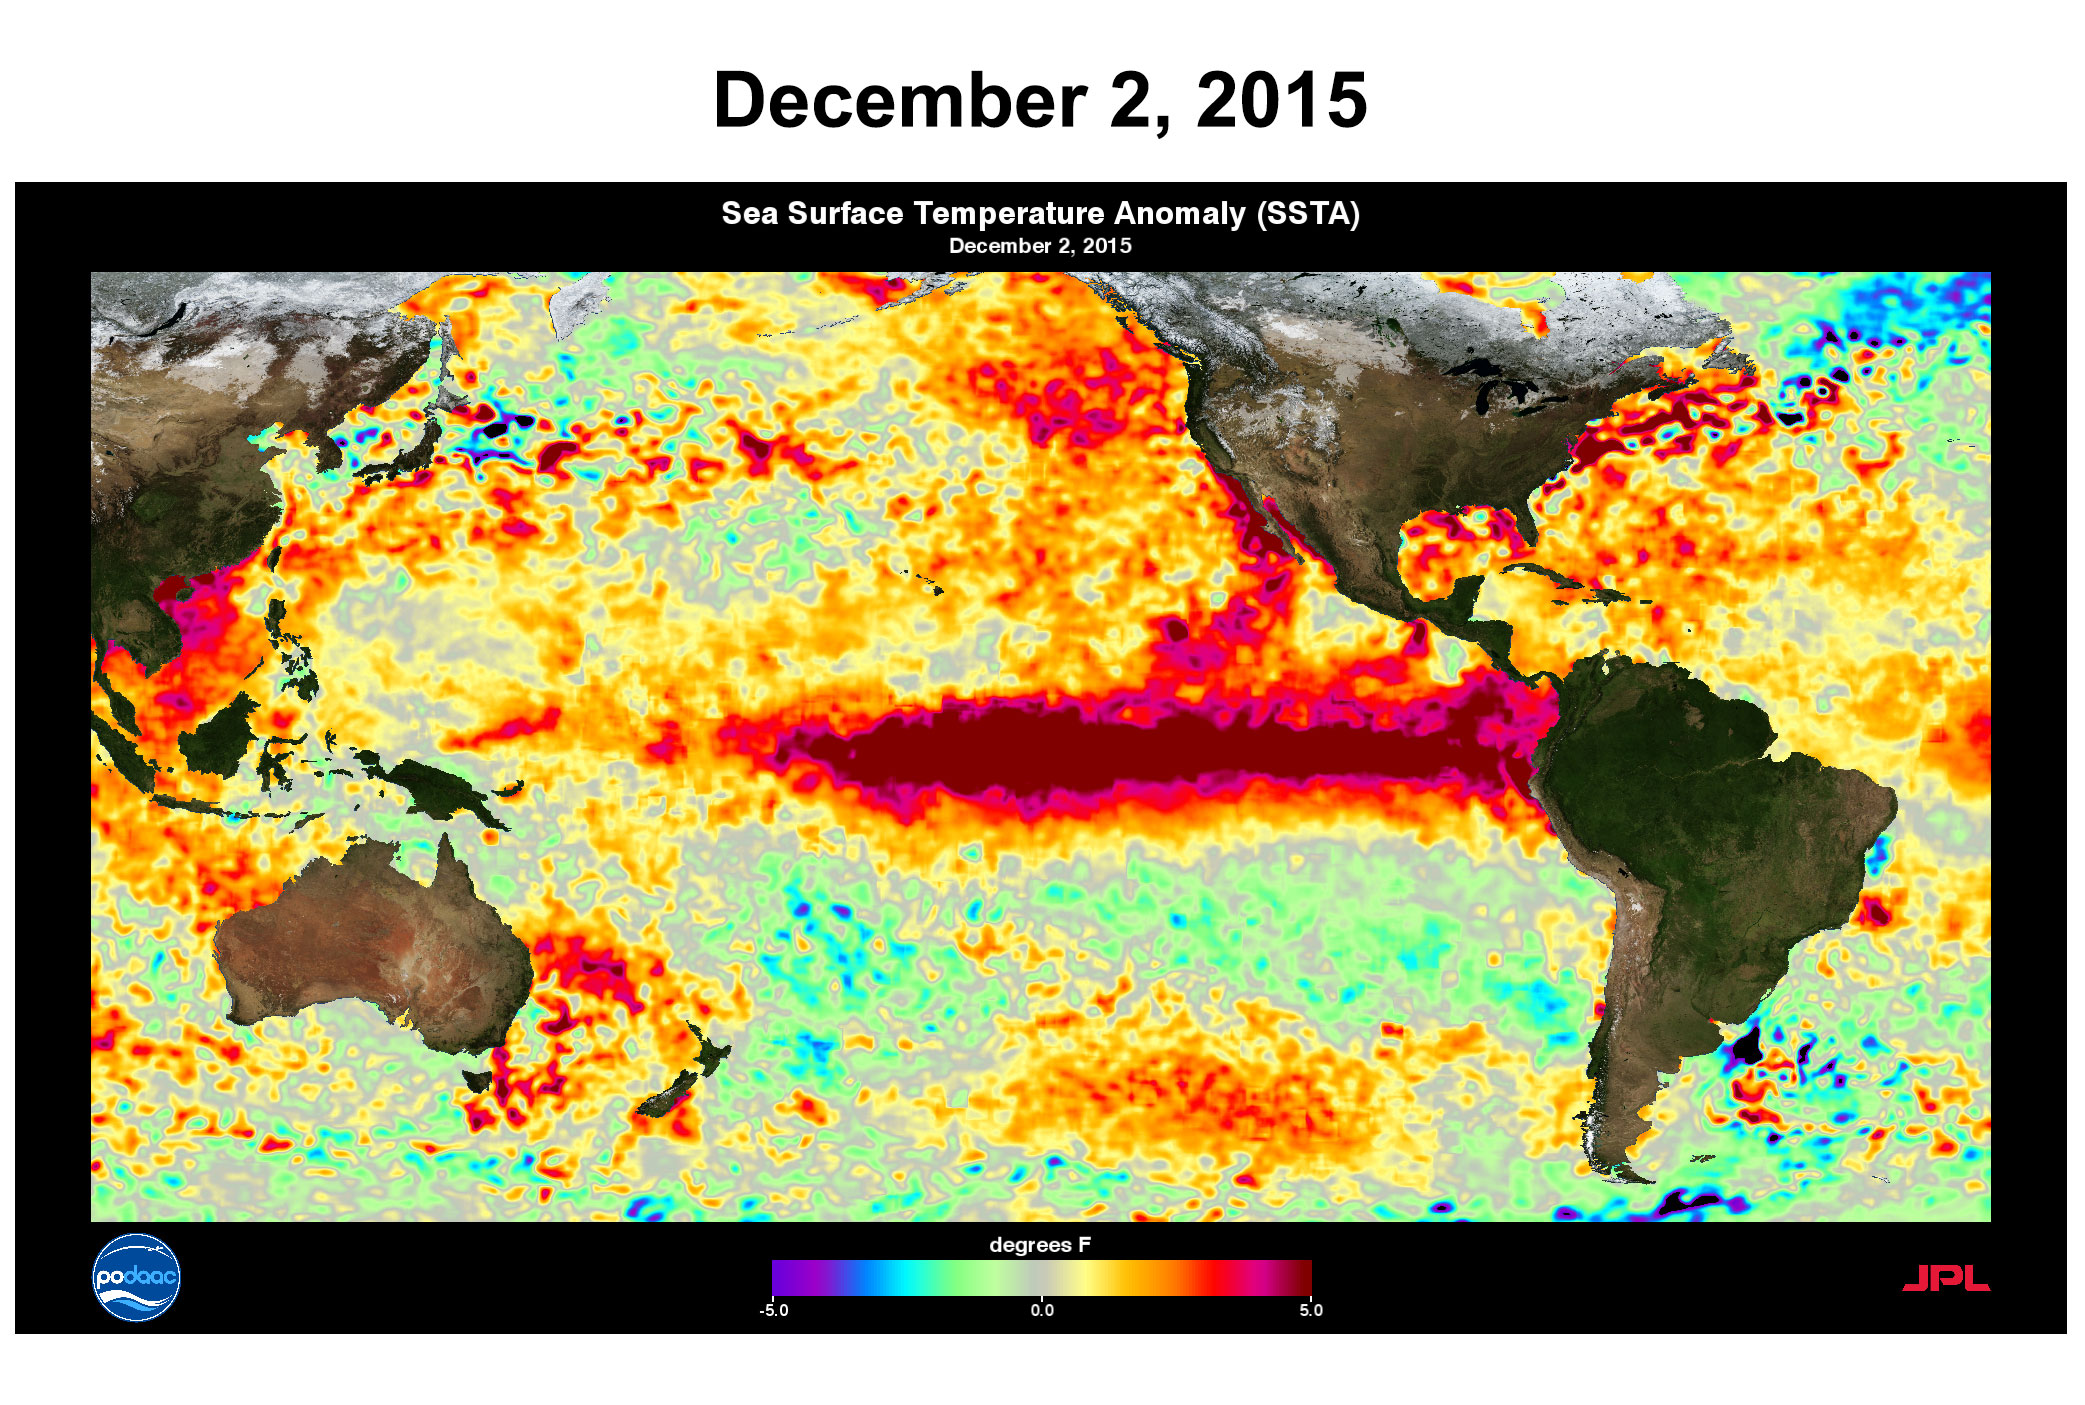 Des anomalies des températures de surface des océans ont été constatées le 2 décembre 2015. Le phénomène El Niño est ici bien visible, sur la ceinture équatoriale de l’océan Pacifique. © Nasa, JPL, PODAAC, NOAA